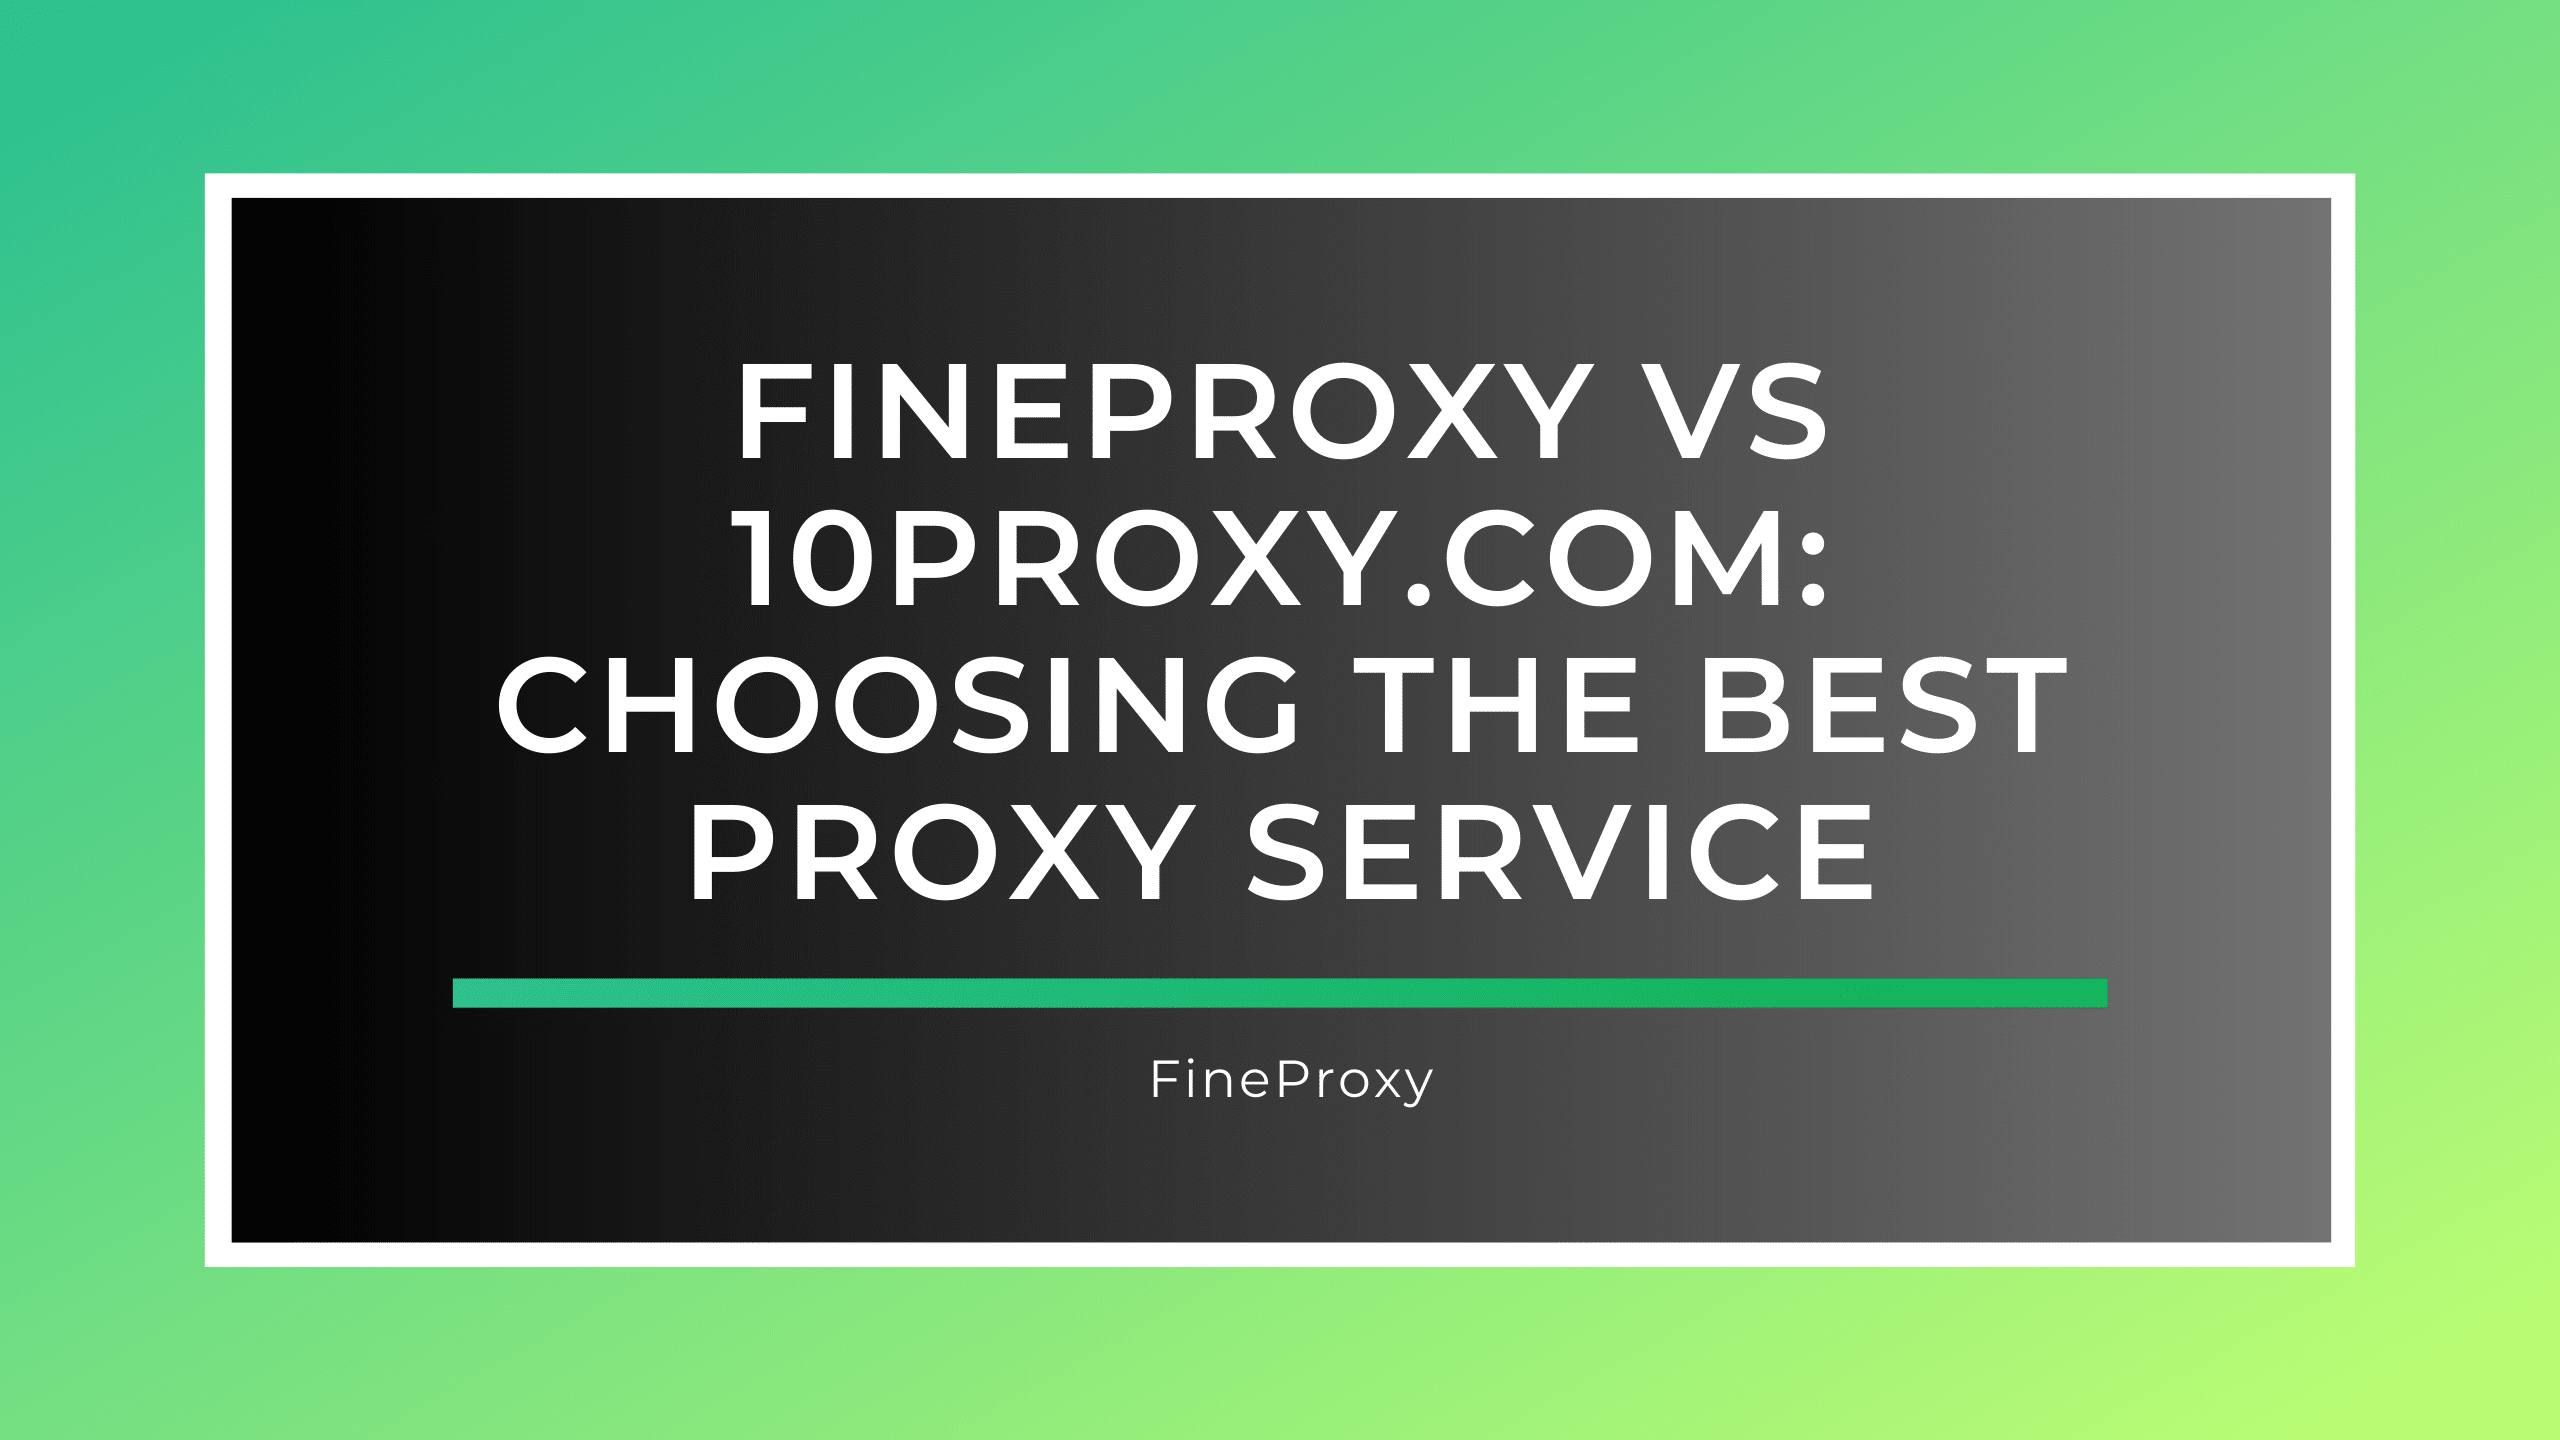 FineProxy vs 10proxy.com: 最適なプロキシ サービスの選択